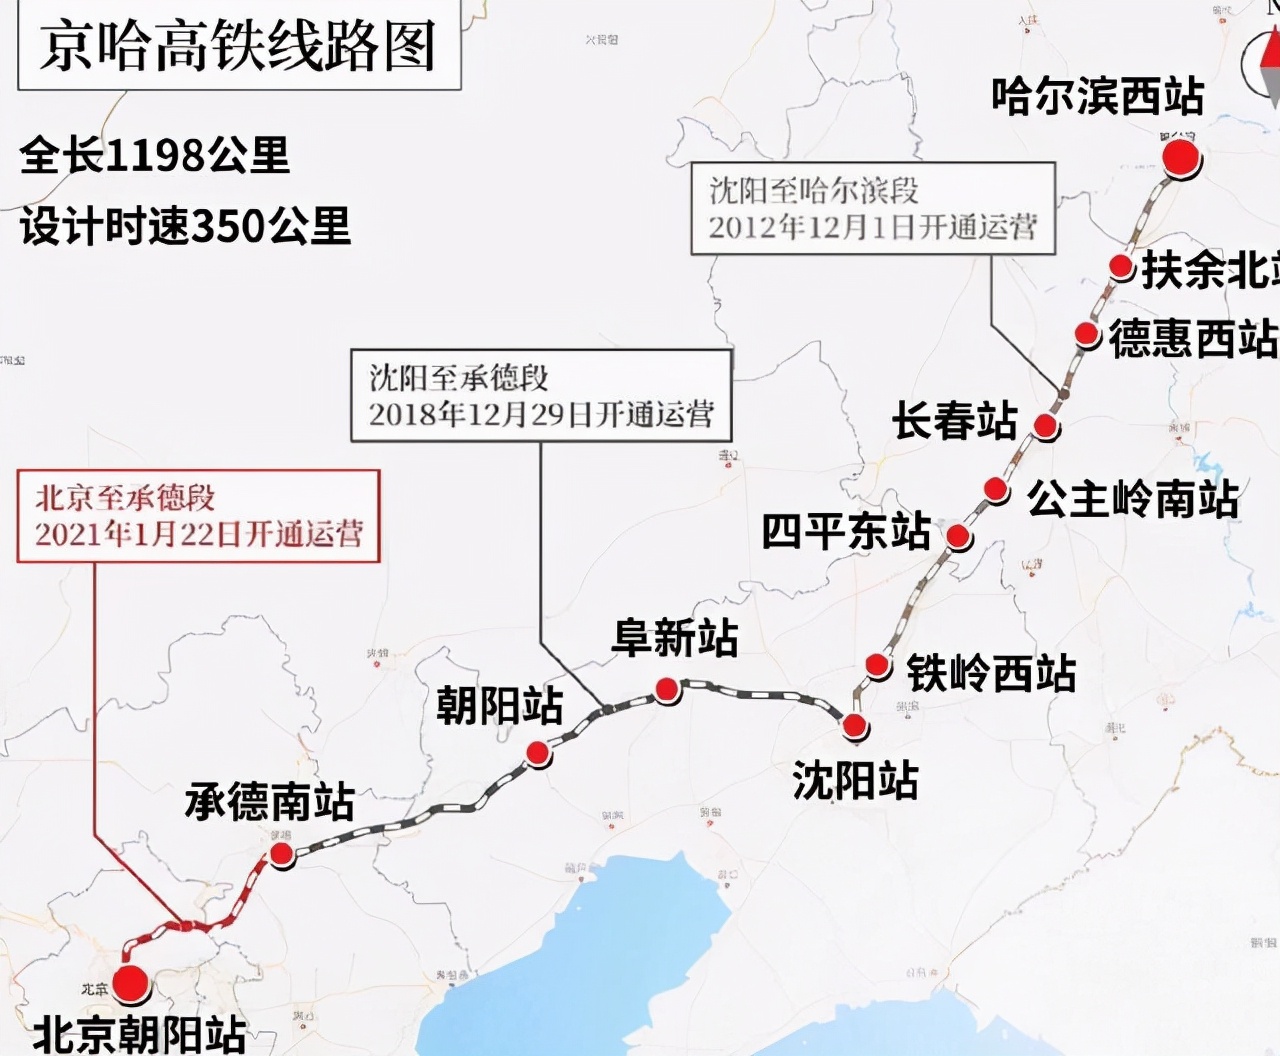 北京直通哈尔滨的高铁线:全程32站,快看看沿线有你家吗?